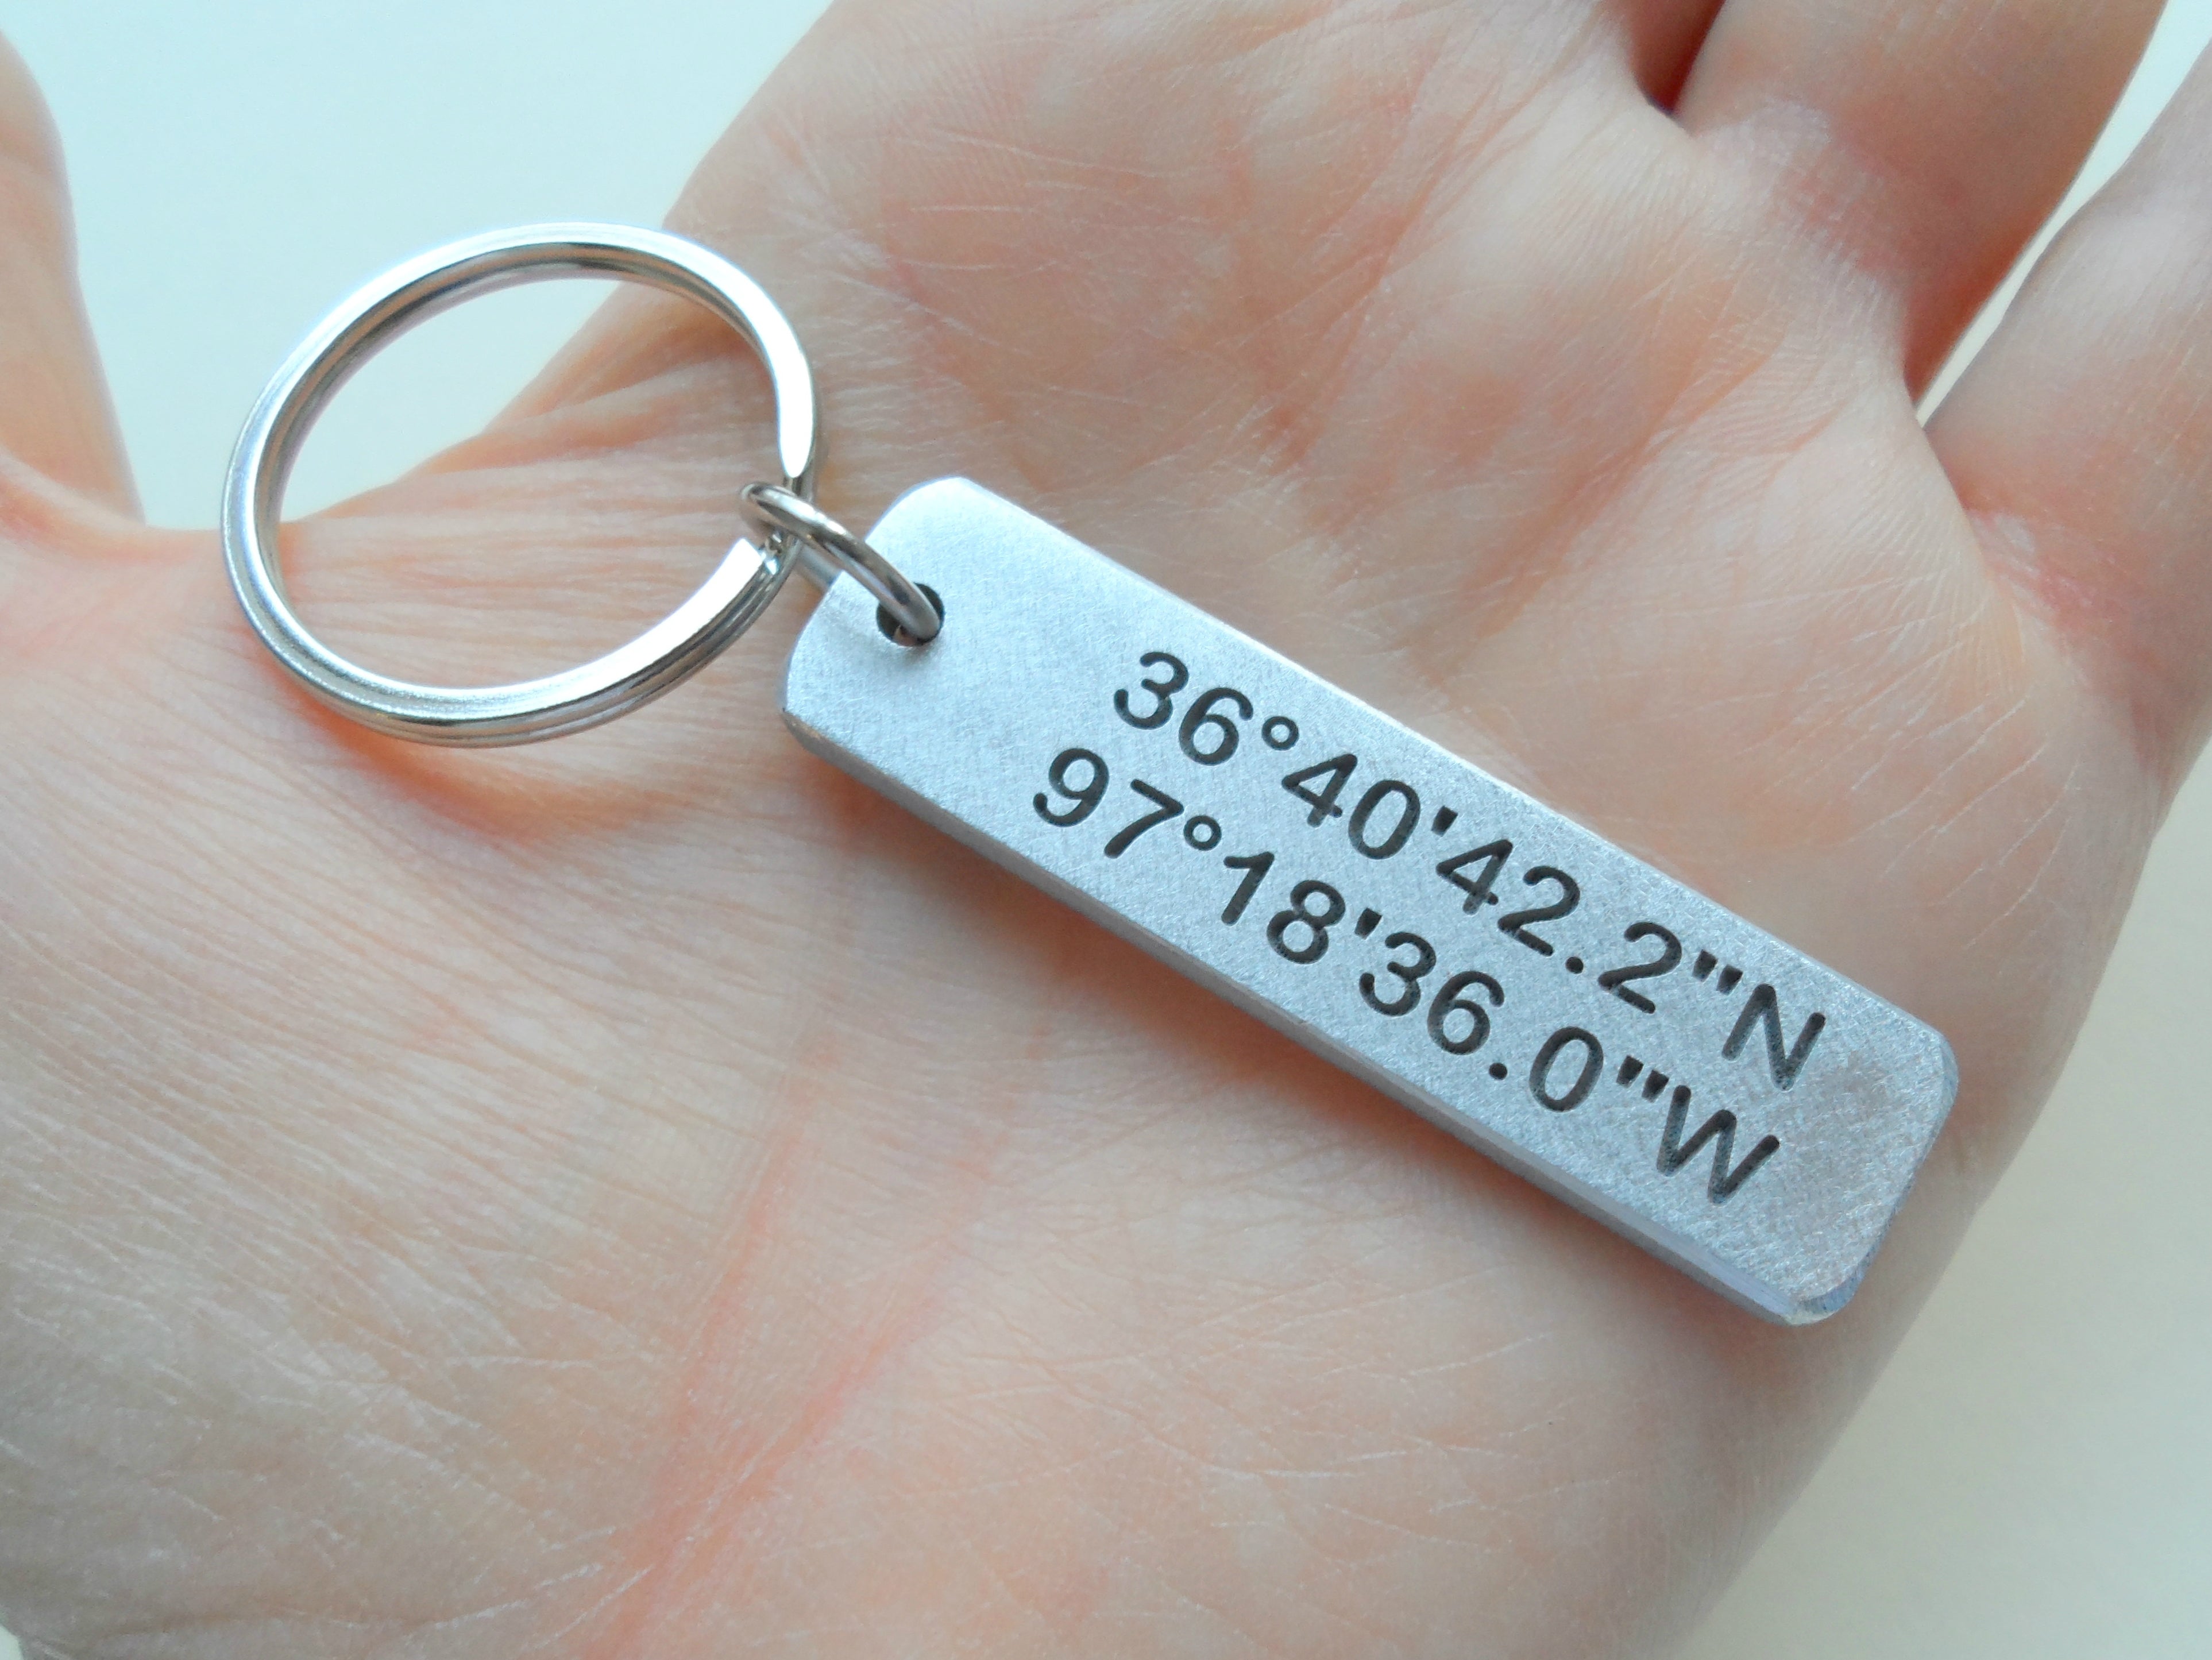 Personalized Leather Keychain, Customized Keychain,custom Leather Key Chain,coordinates  Key Chain Longitude Latitude Keychain,best Gift 